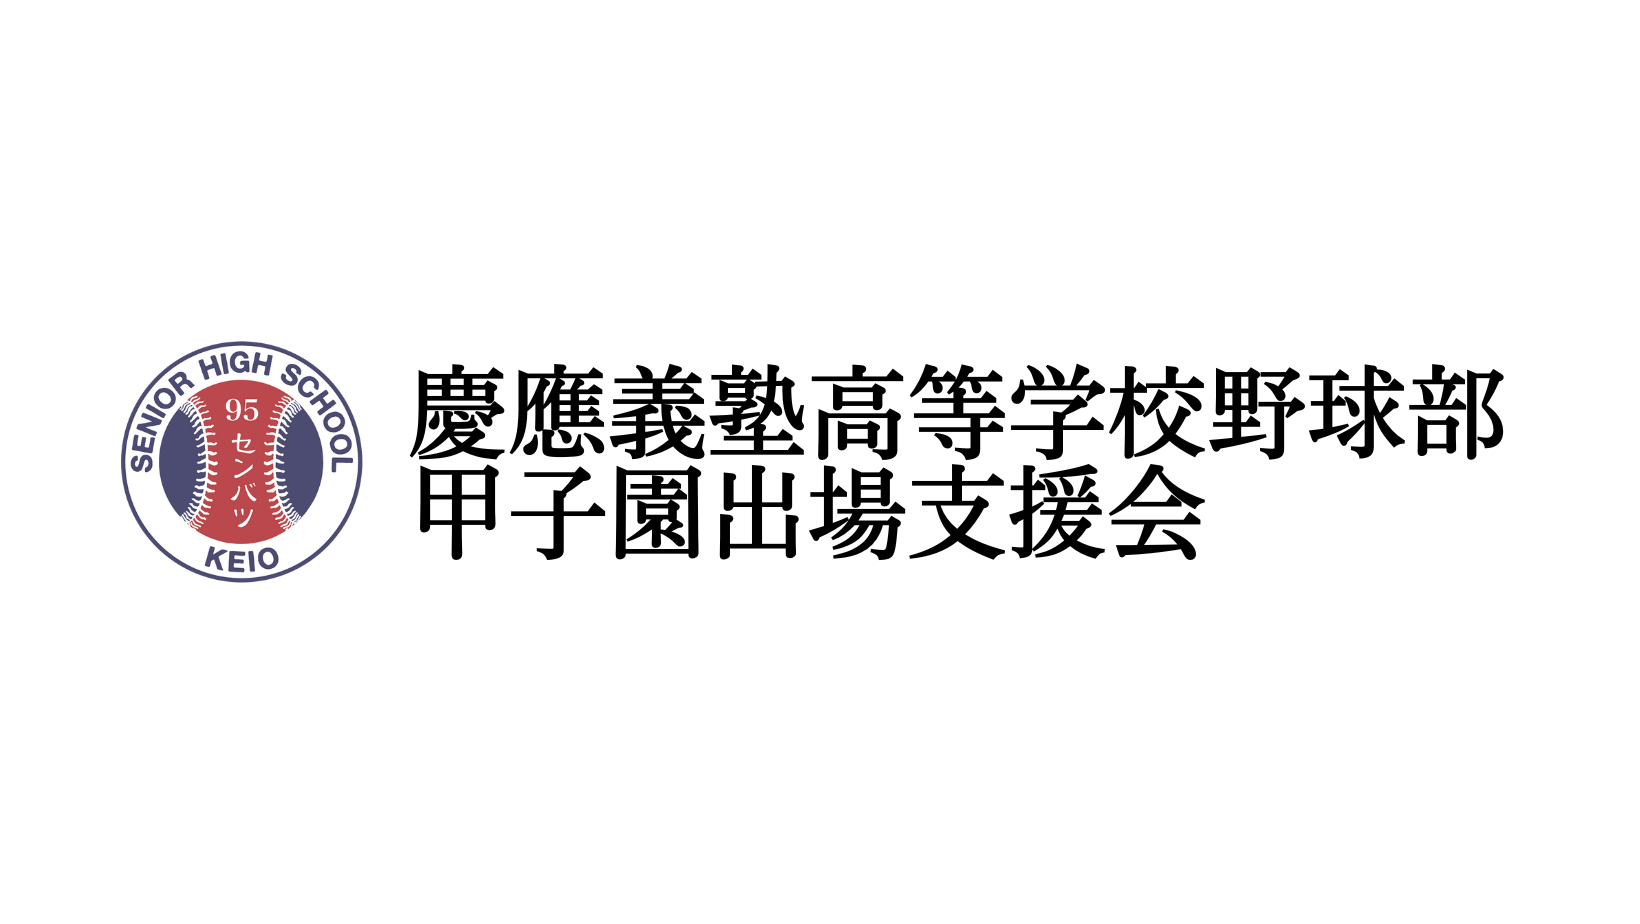 「慶應義塾高等学校野球部甲子園出場支援募金」のネットからのお申し込みが可能になりました